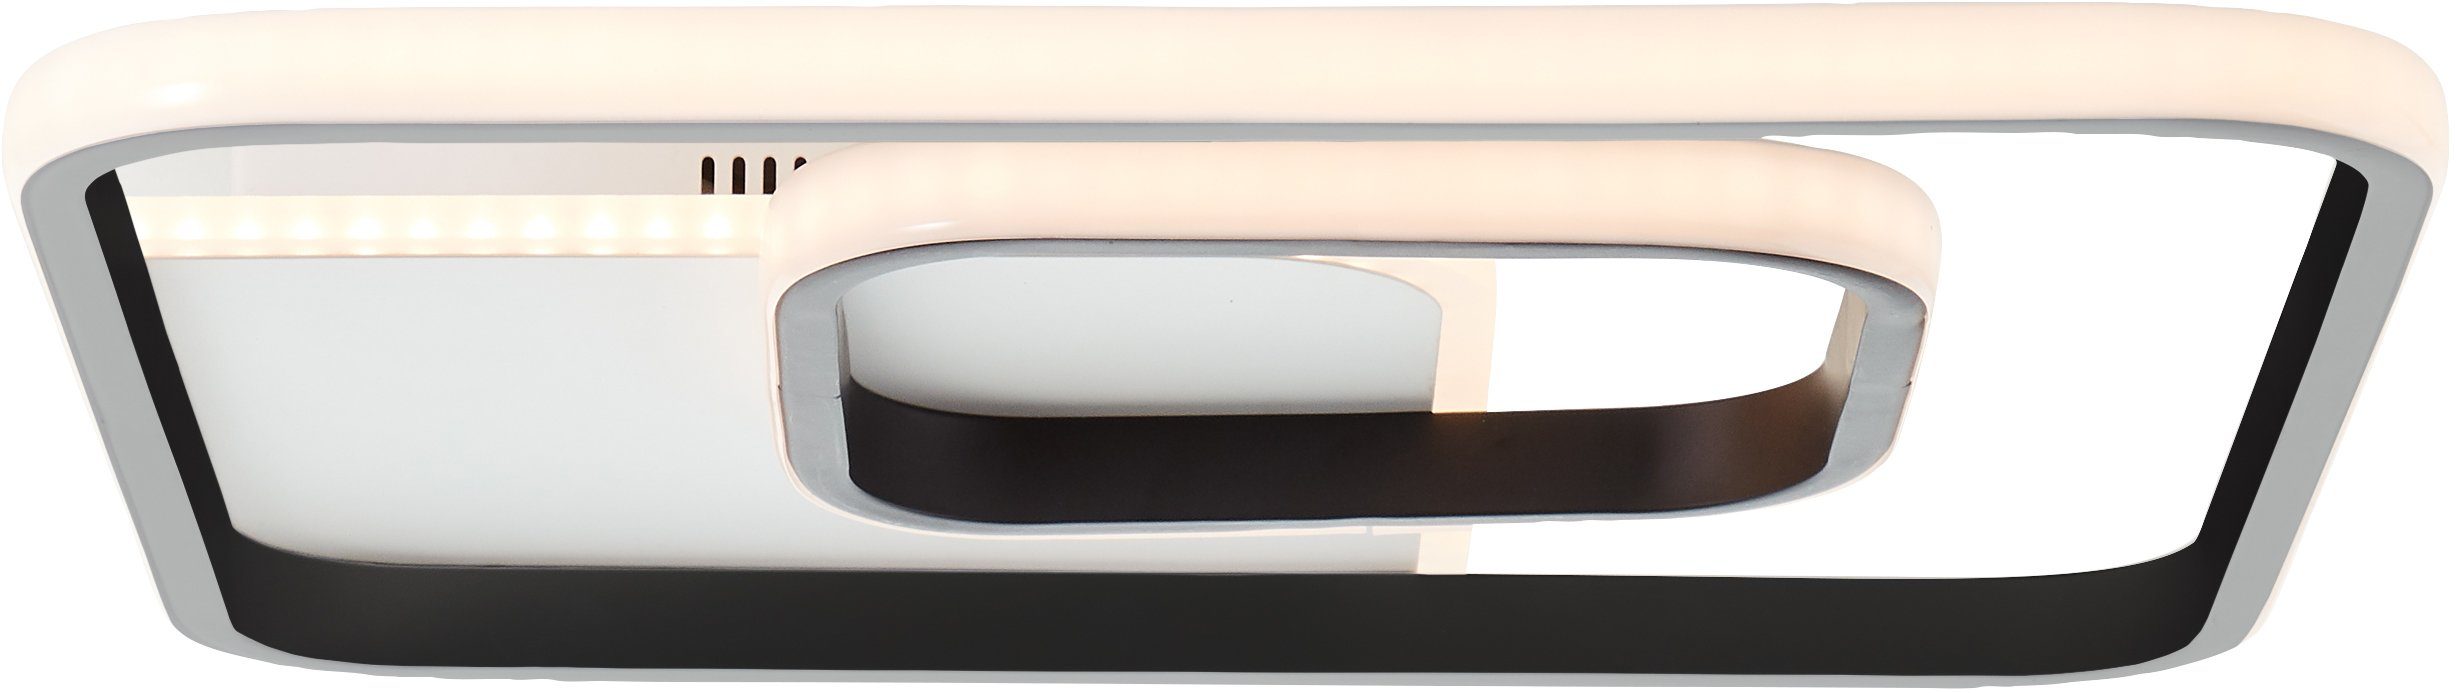 Neue Ausgabe Brilliant Deckenleuchte Merapi, 3000K, weiß/schwarz, 40x40cm Deckenleuchte LED Merapi 1x integrier LED Lampe